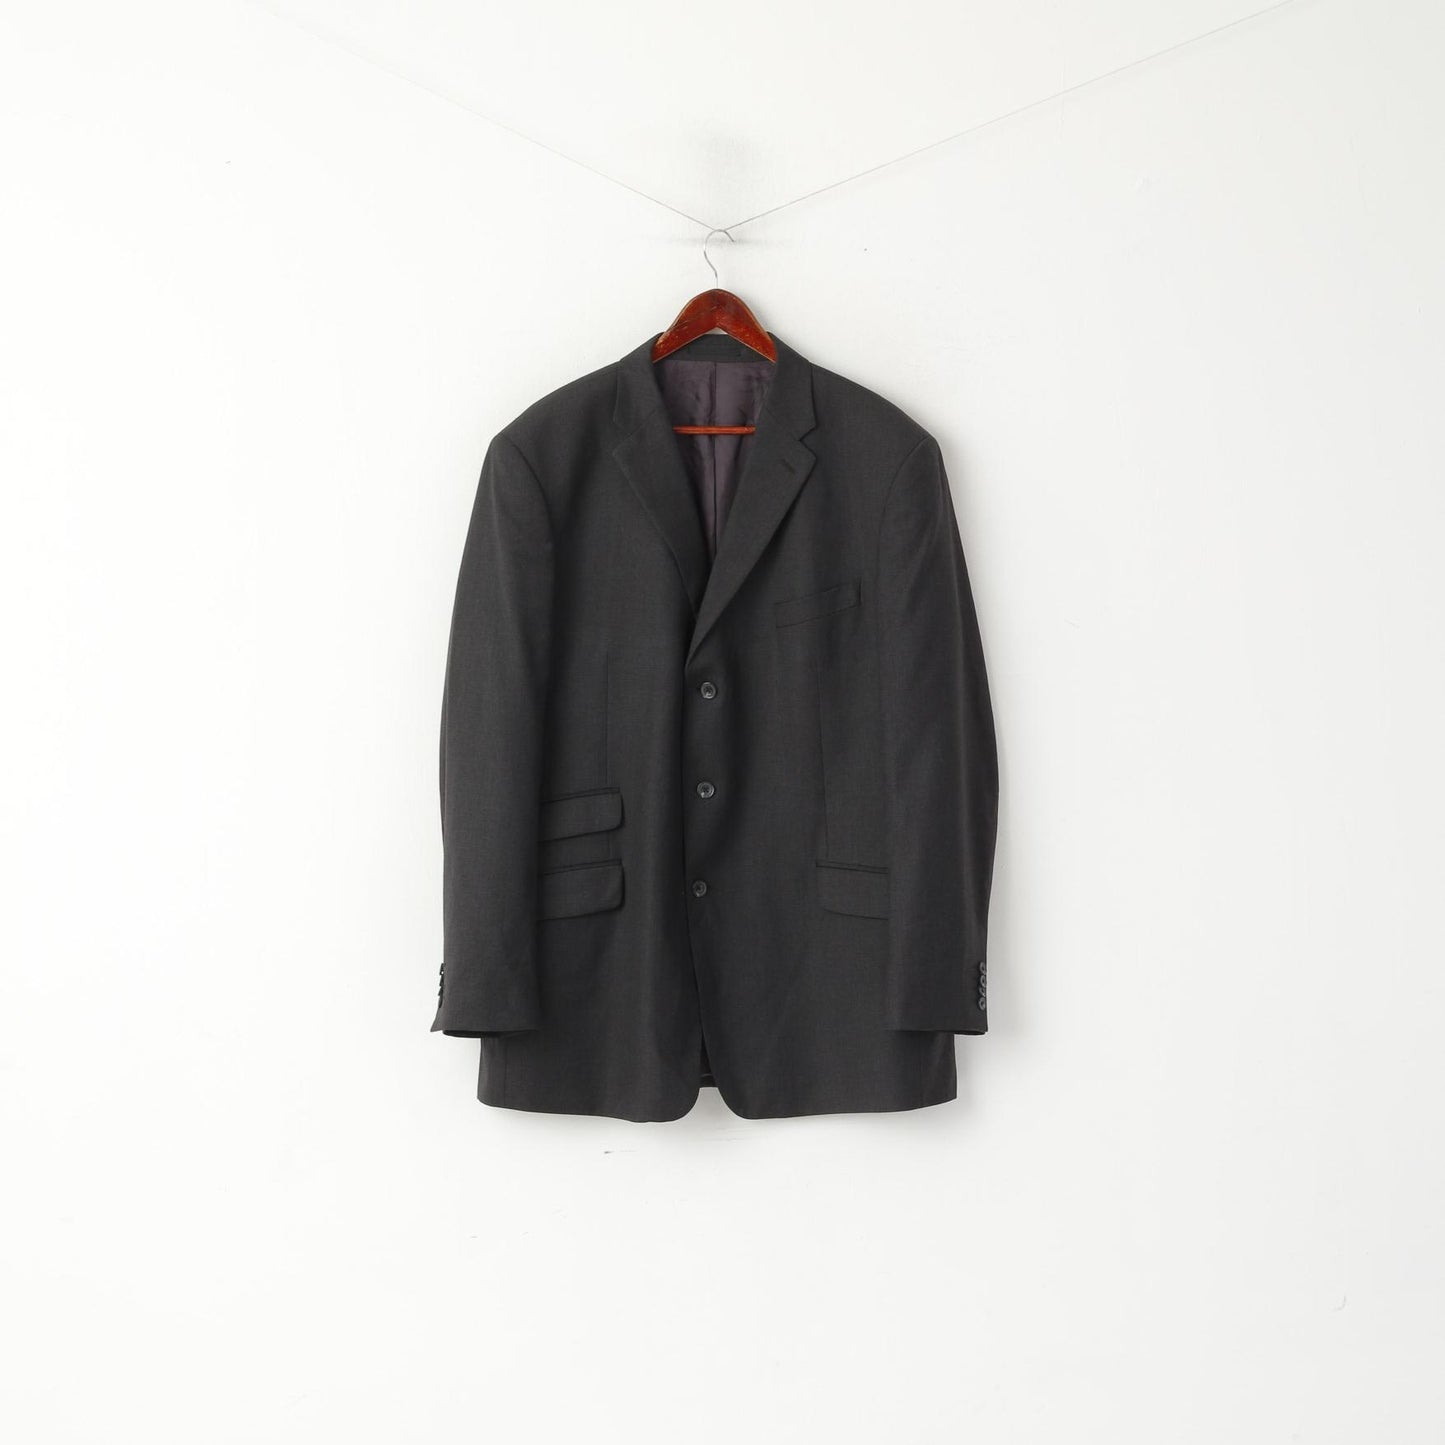 TM Lewin Men 48 58 Blazer Charcoal Wool Single Breasted Long Jacket